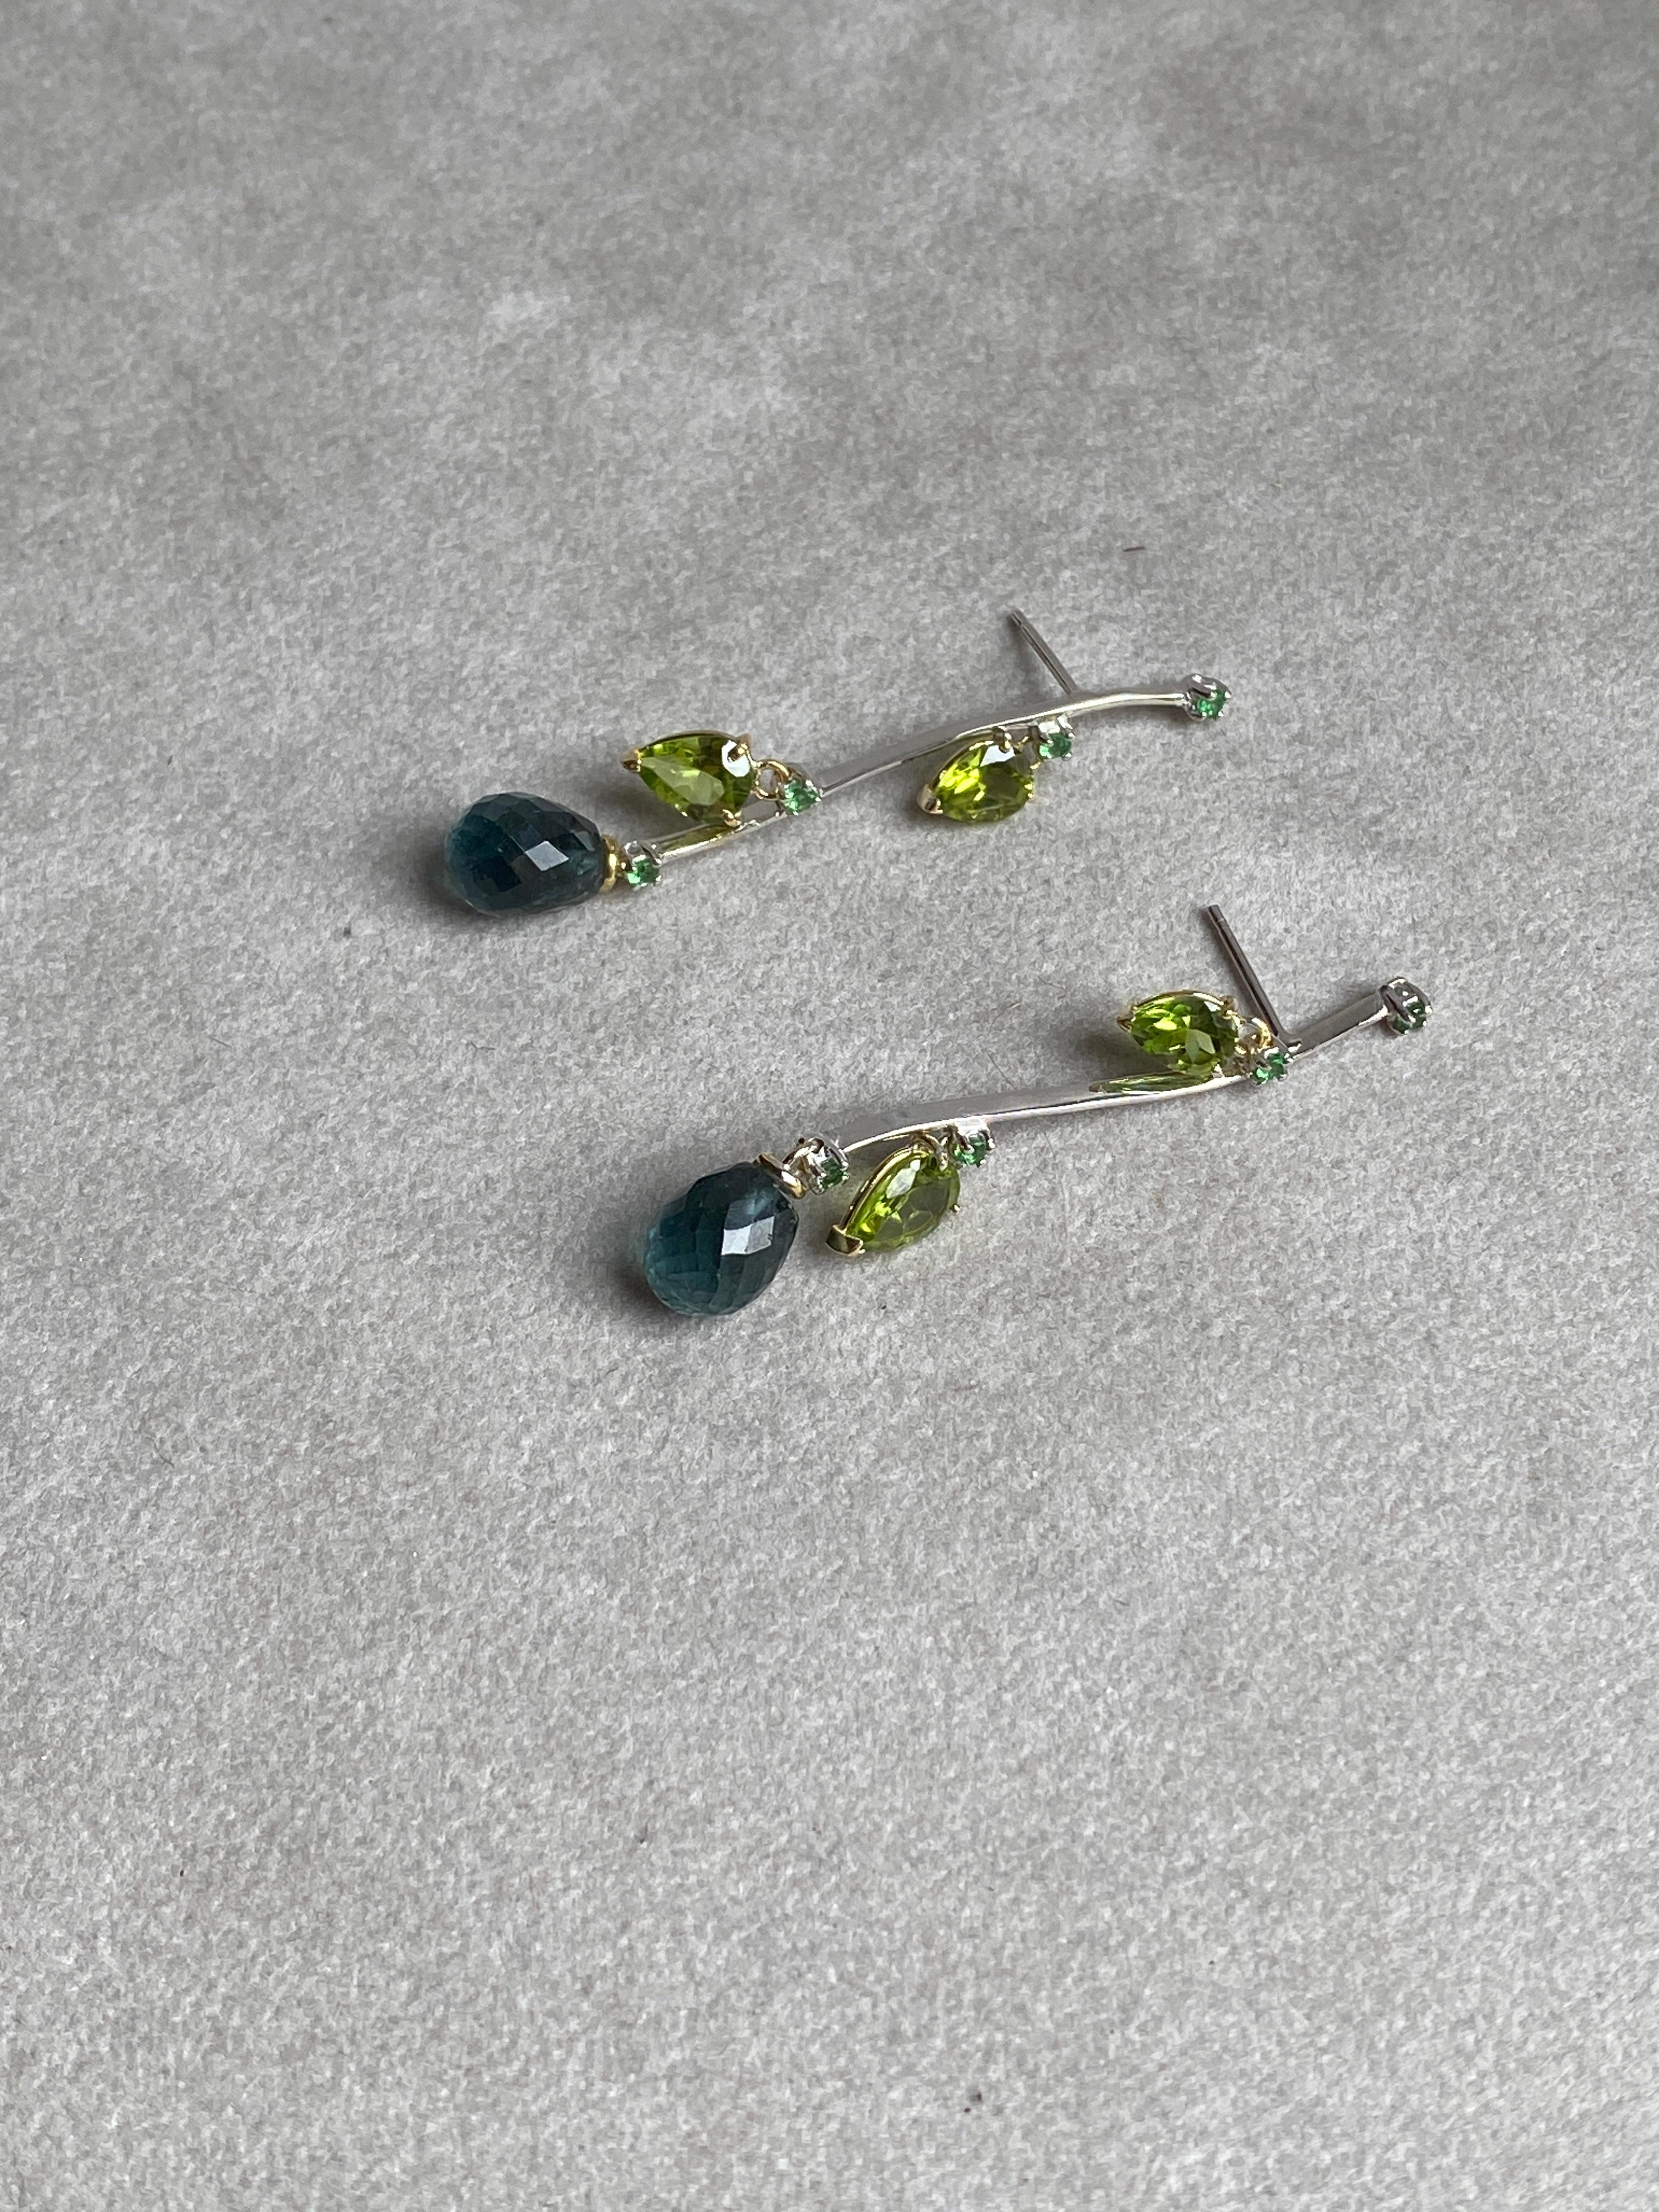 Pear Cut Rossella Ugolini Blue-Green Tourmaline Peridot Emeralds 18K Gold Dangle Earrings For Sale